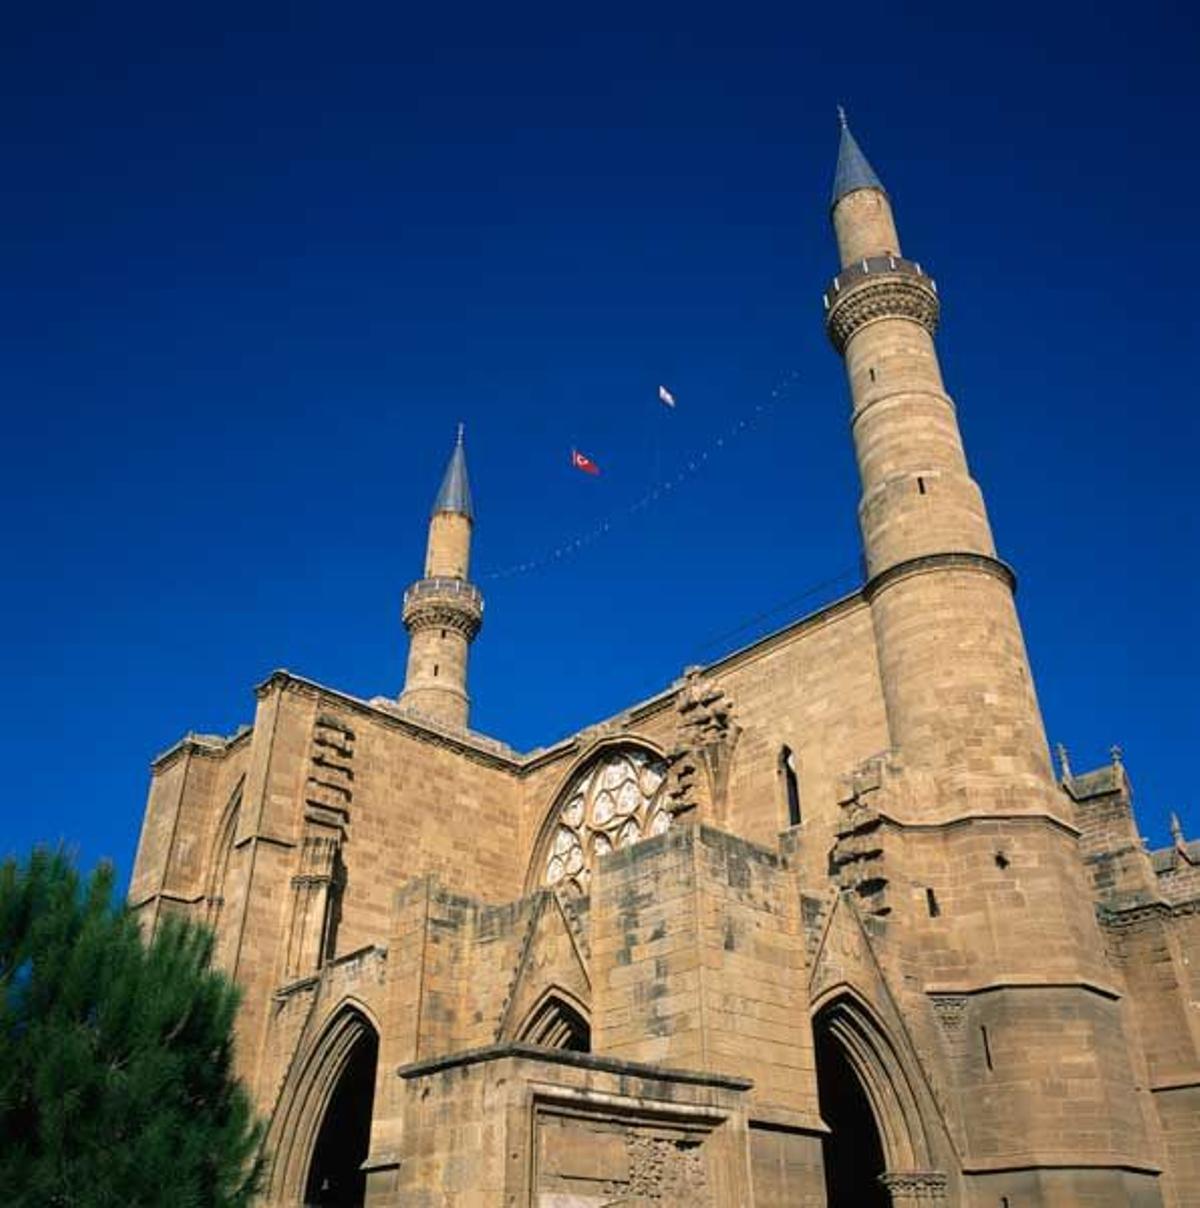 La catedral gótica de Santa Sofía, en Nicosia, hoy convertida en mezquita Selimiye. La parte norte de  esta capital está ocupada por Turquía desde 1974.